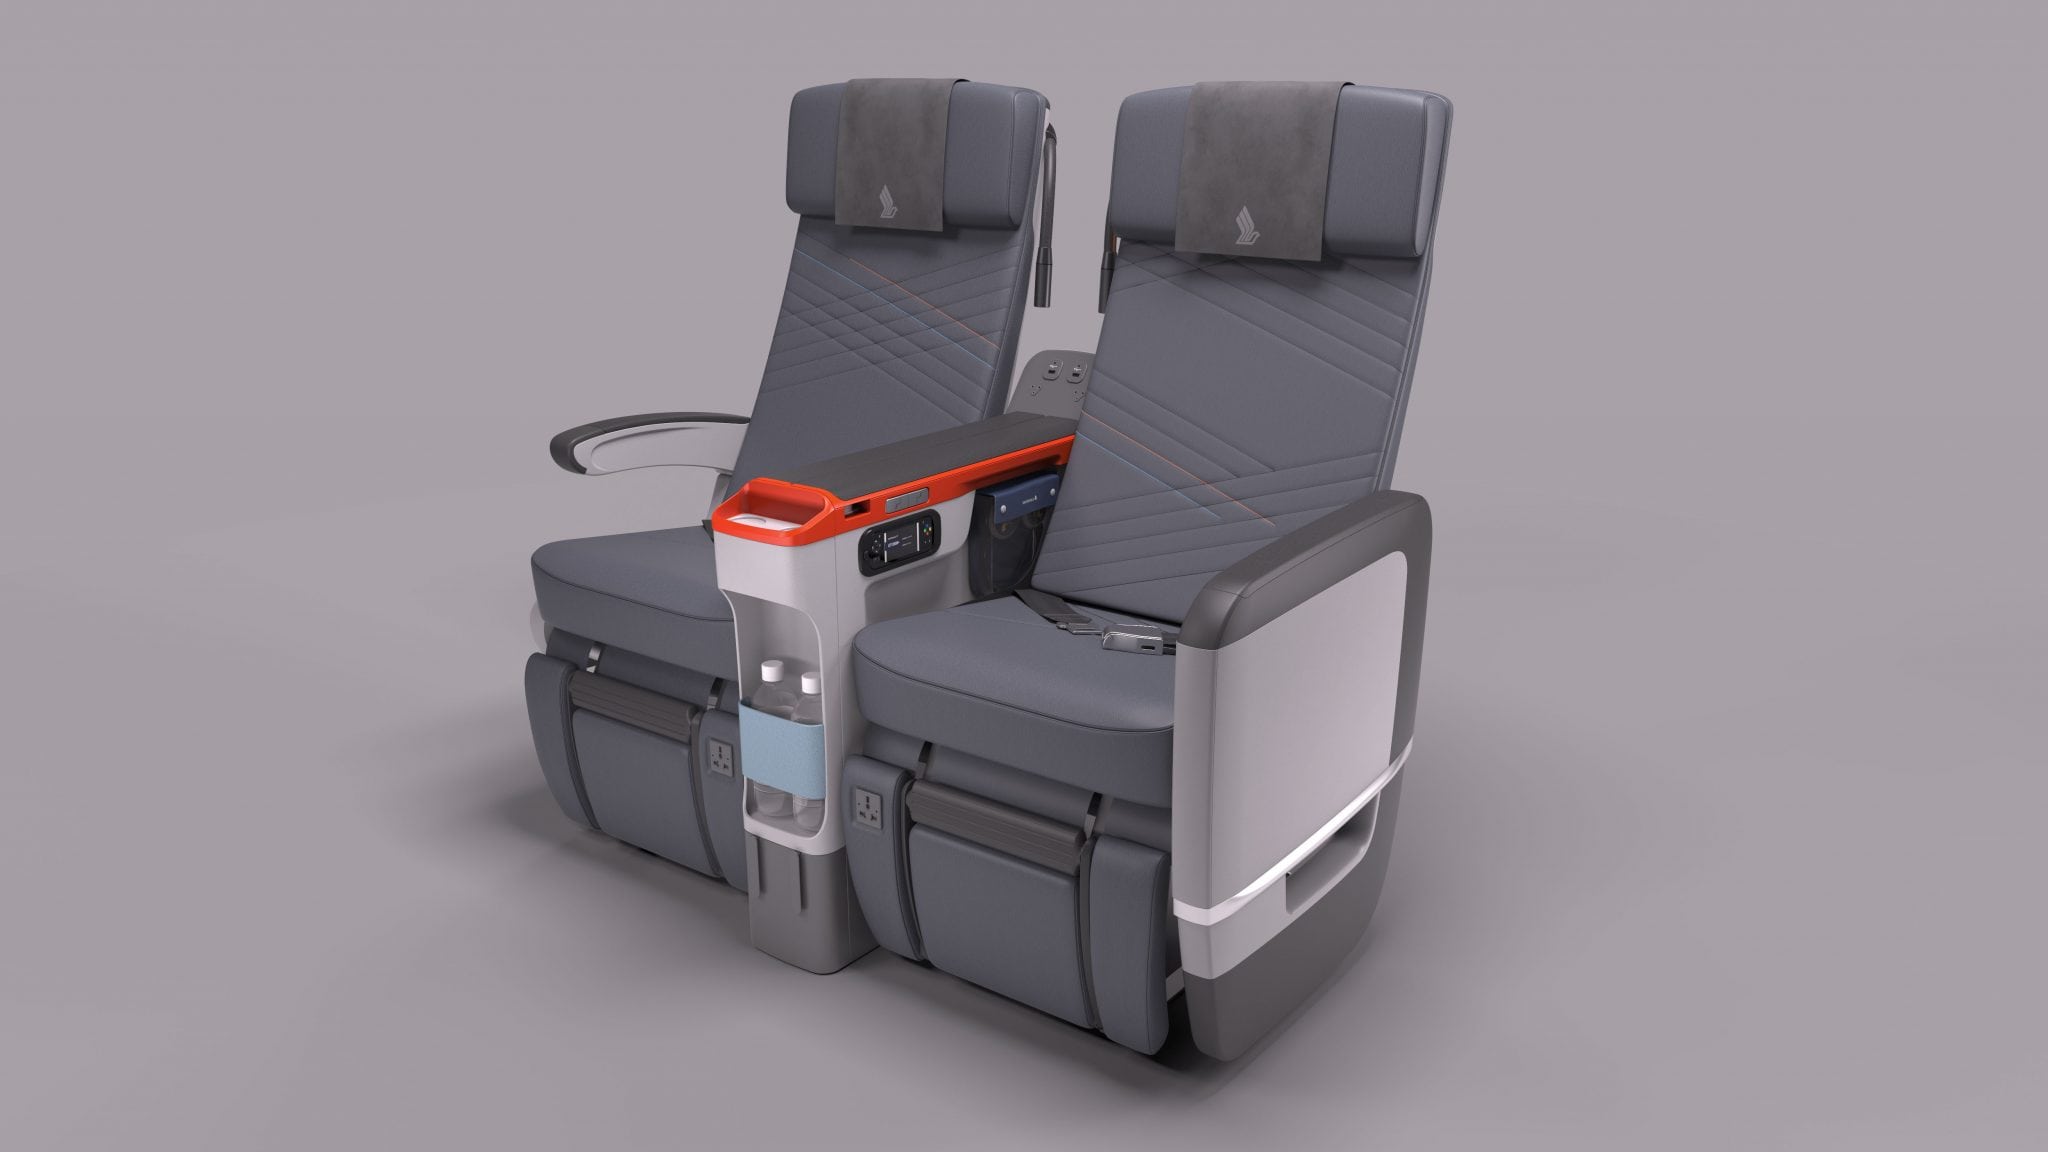 Singapore Airlines' new Premium Economy seating